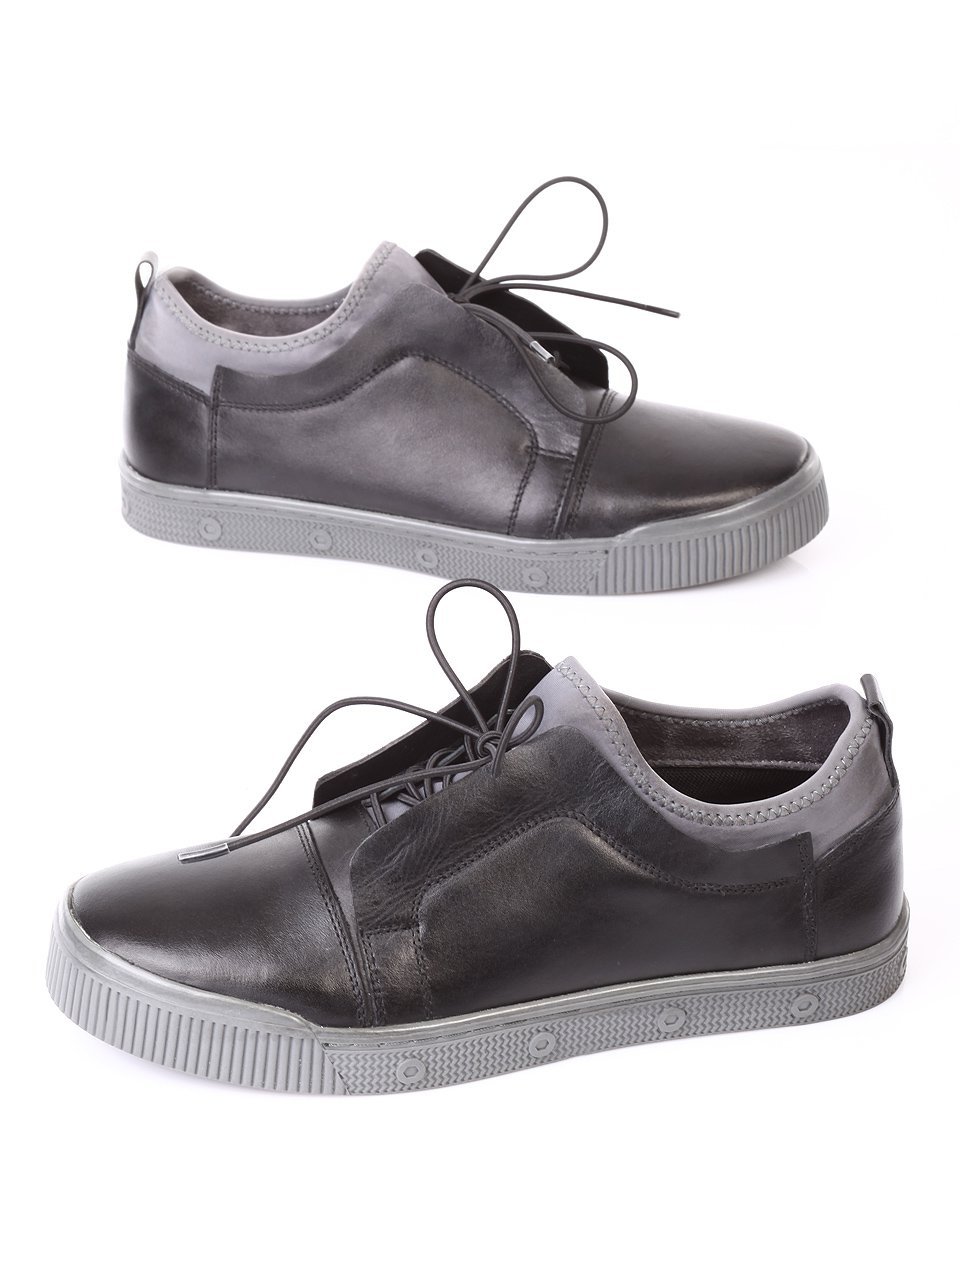 Ежедневни мъжки обувки от естествена кожа в черно и синьо 7N-17834 black/grey